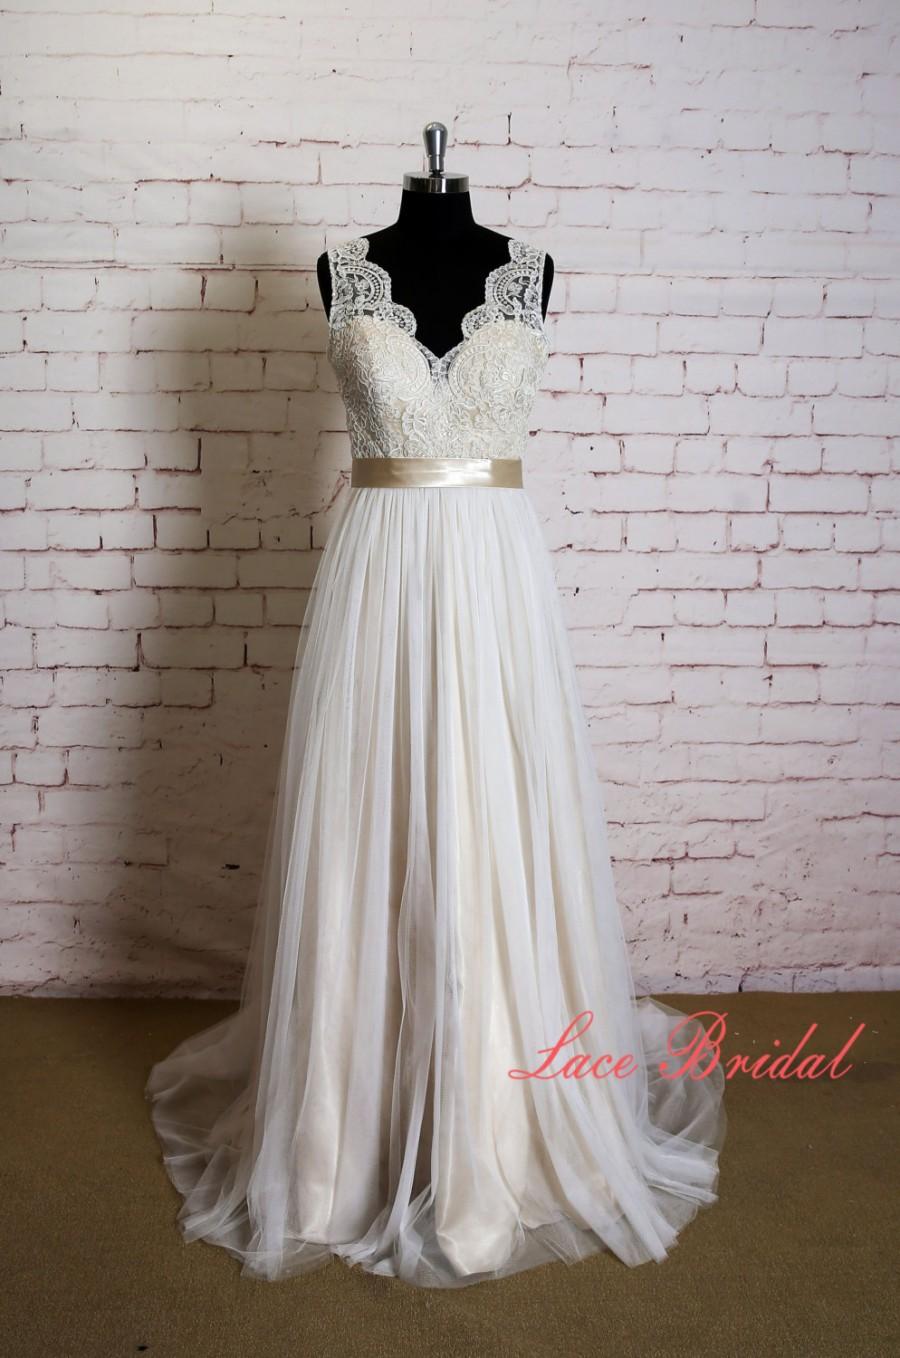 زفاف - Elegant Lace Wedding Dress with V Neck Simple Wedding Dress with Champagne Underlay Classic Ivory Overlay Bridal Gown with Sheer Tulle Train